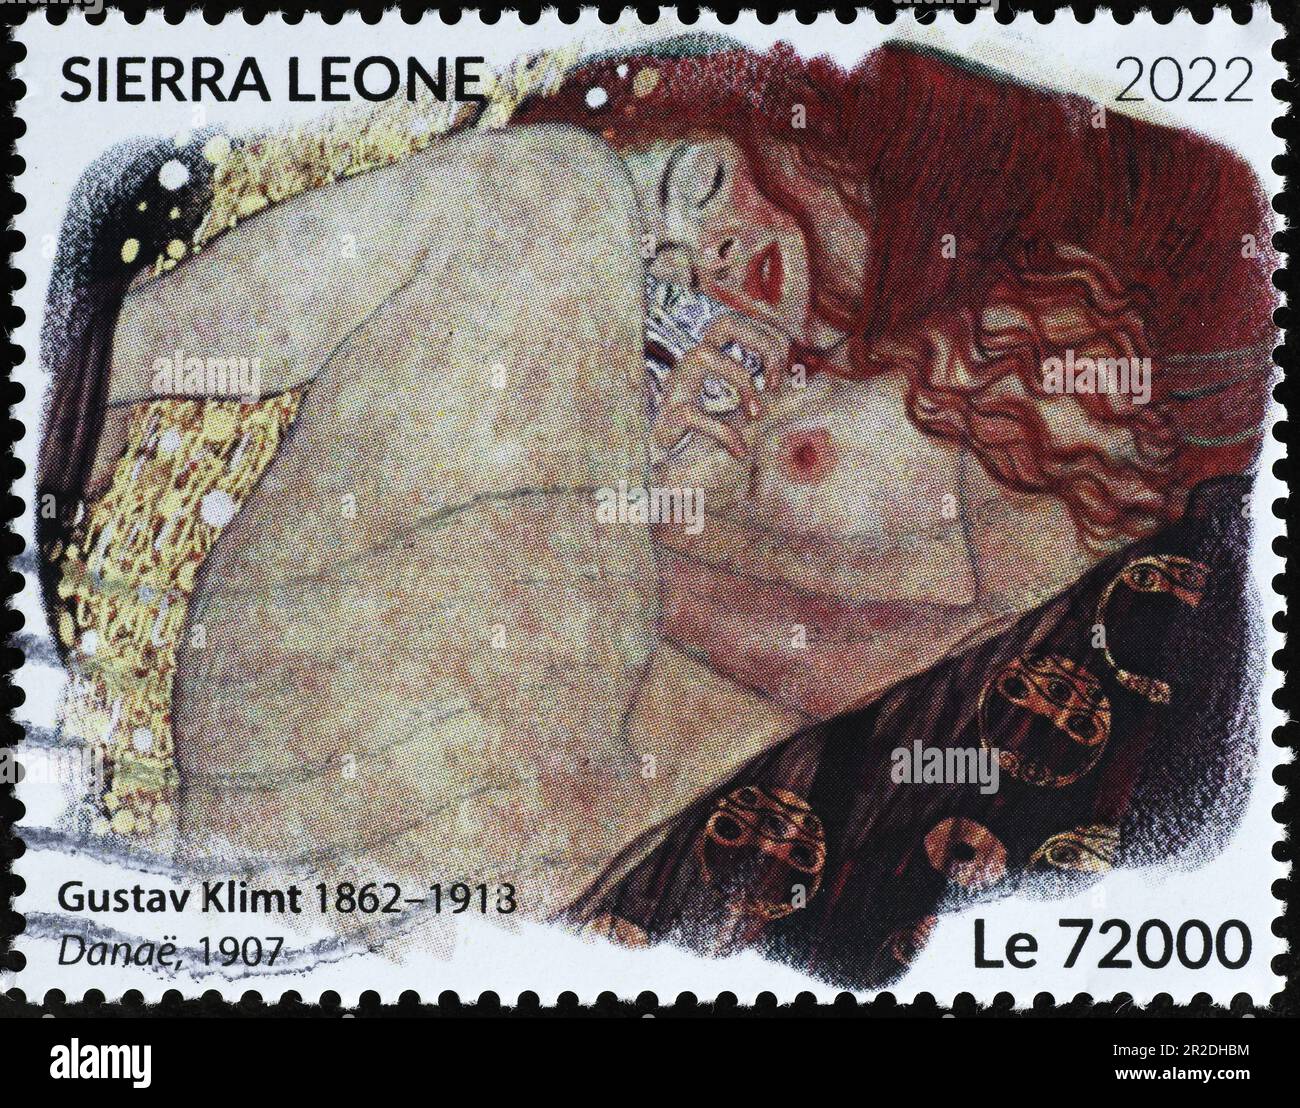 Danae von Gustav Klimt auf der Briefmarke Stockfoto